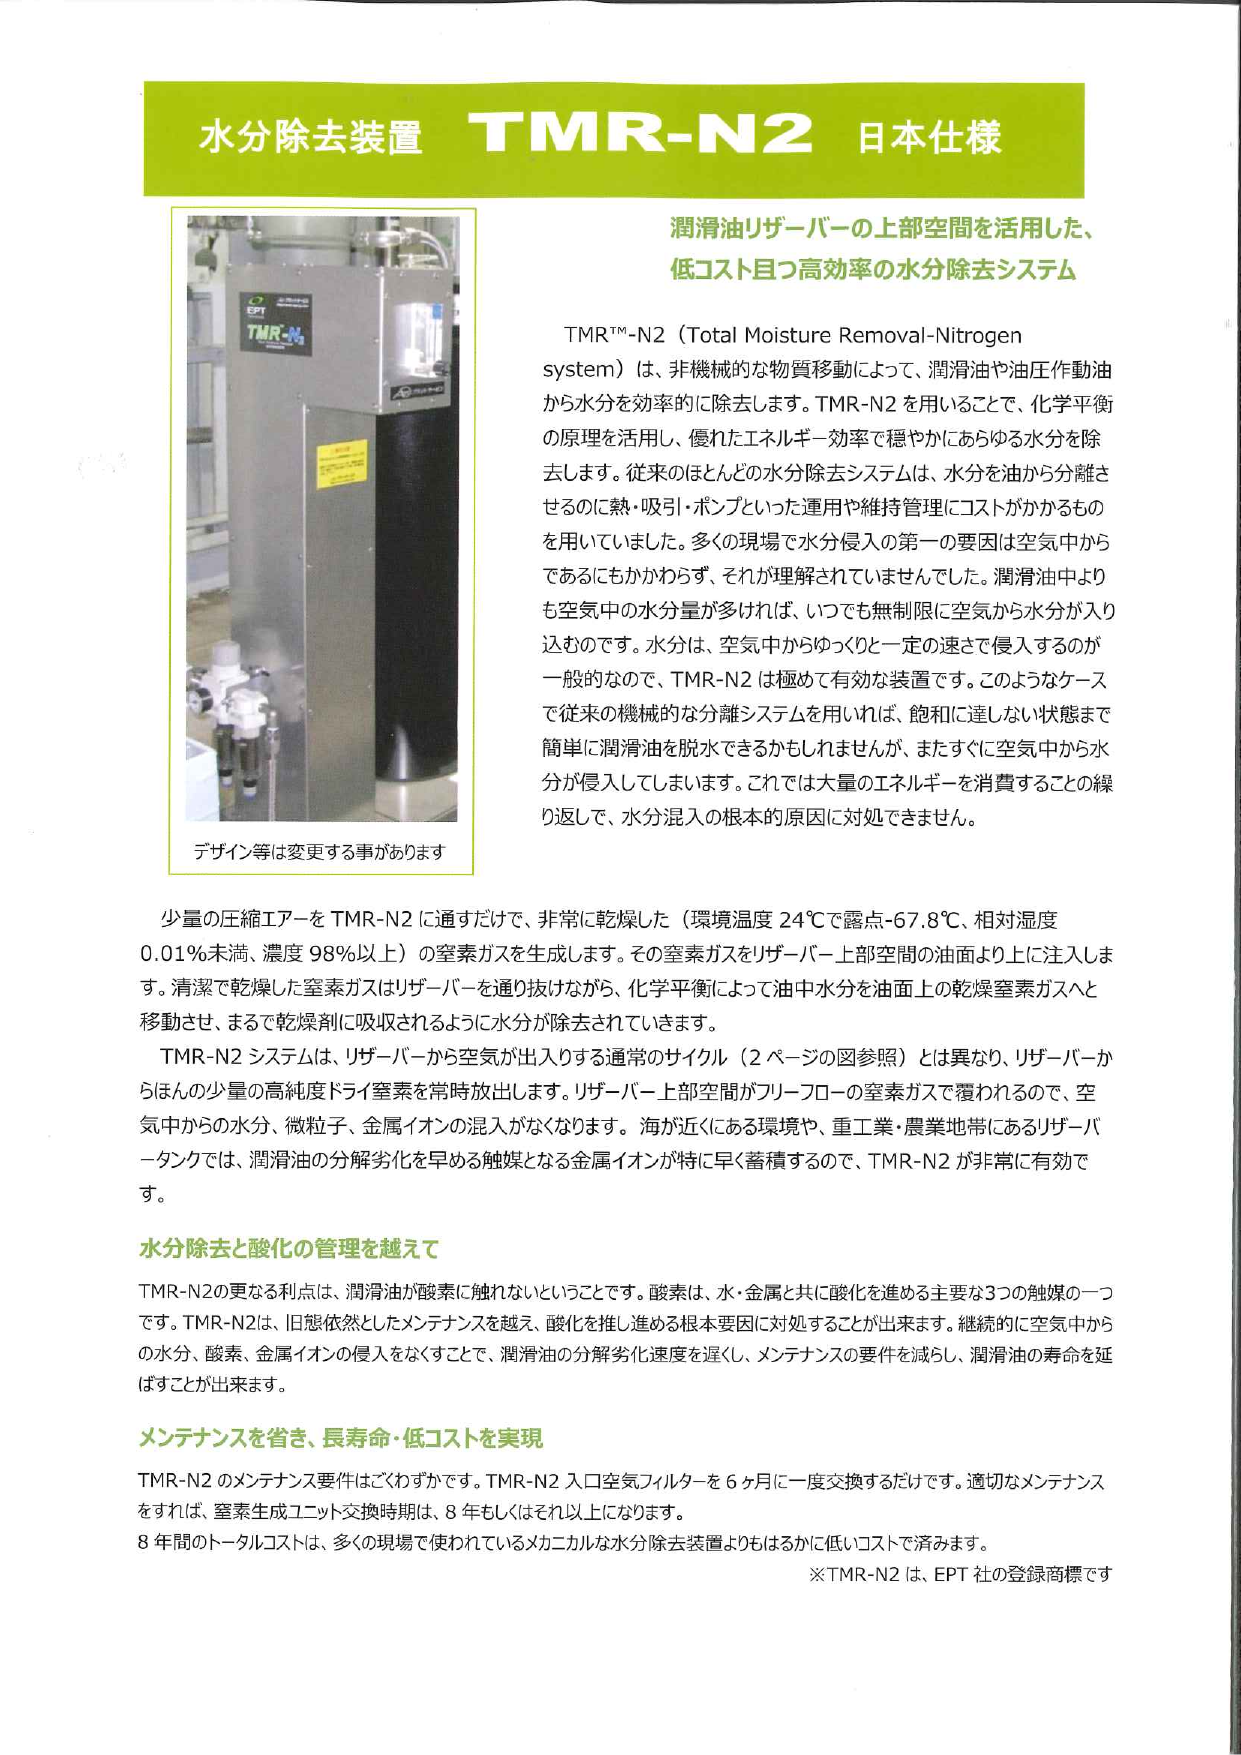 水分除去装置 TMR-N2 日本仕様（株式会社プラントサービス）のカタログ 